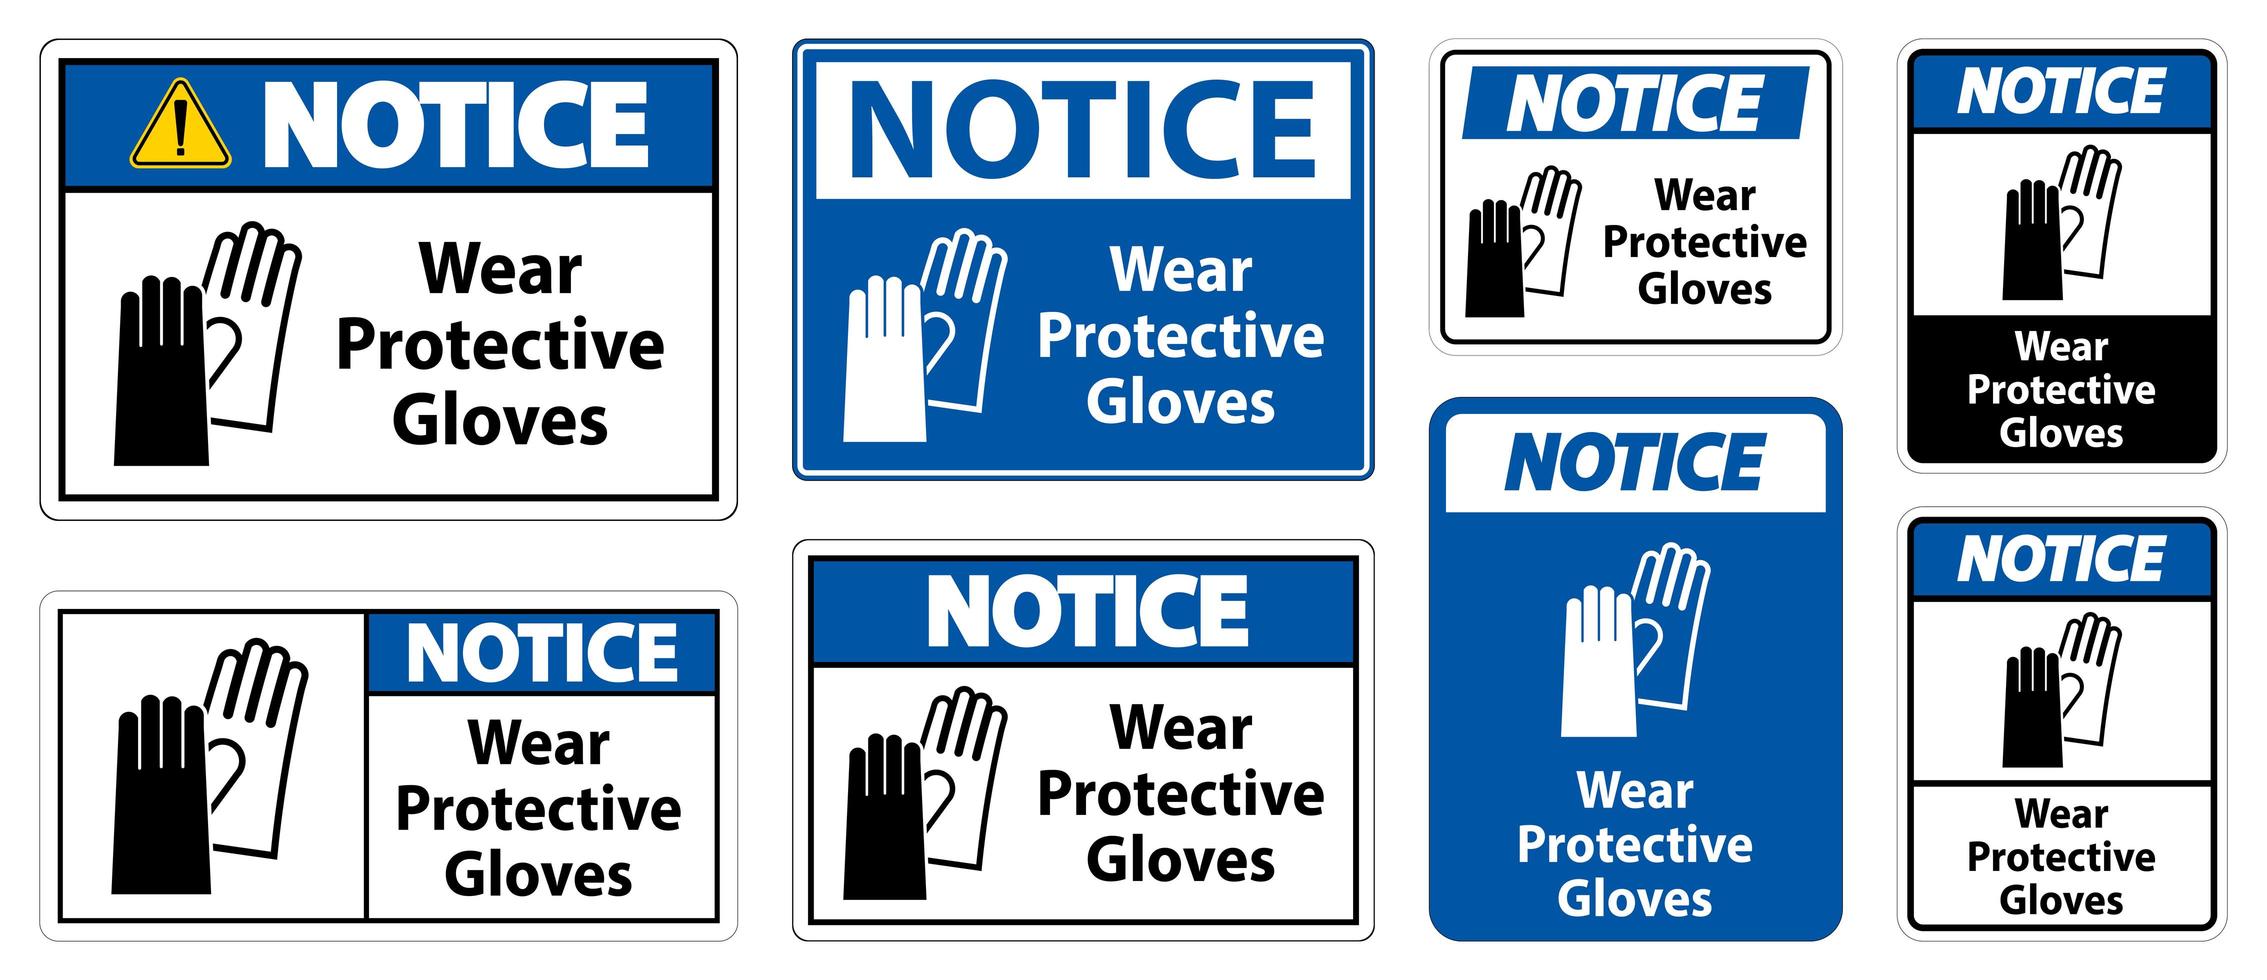 draag beschermende handschoenen teken vector